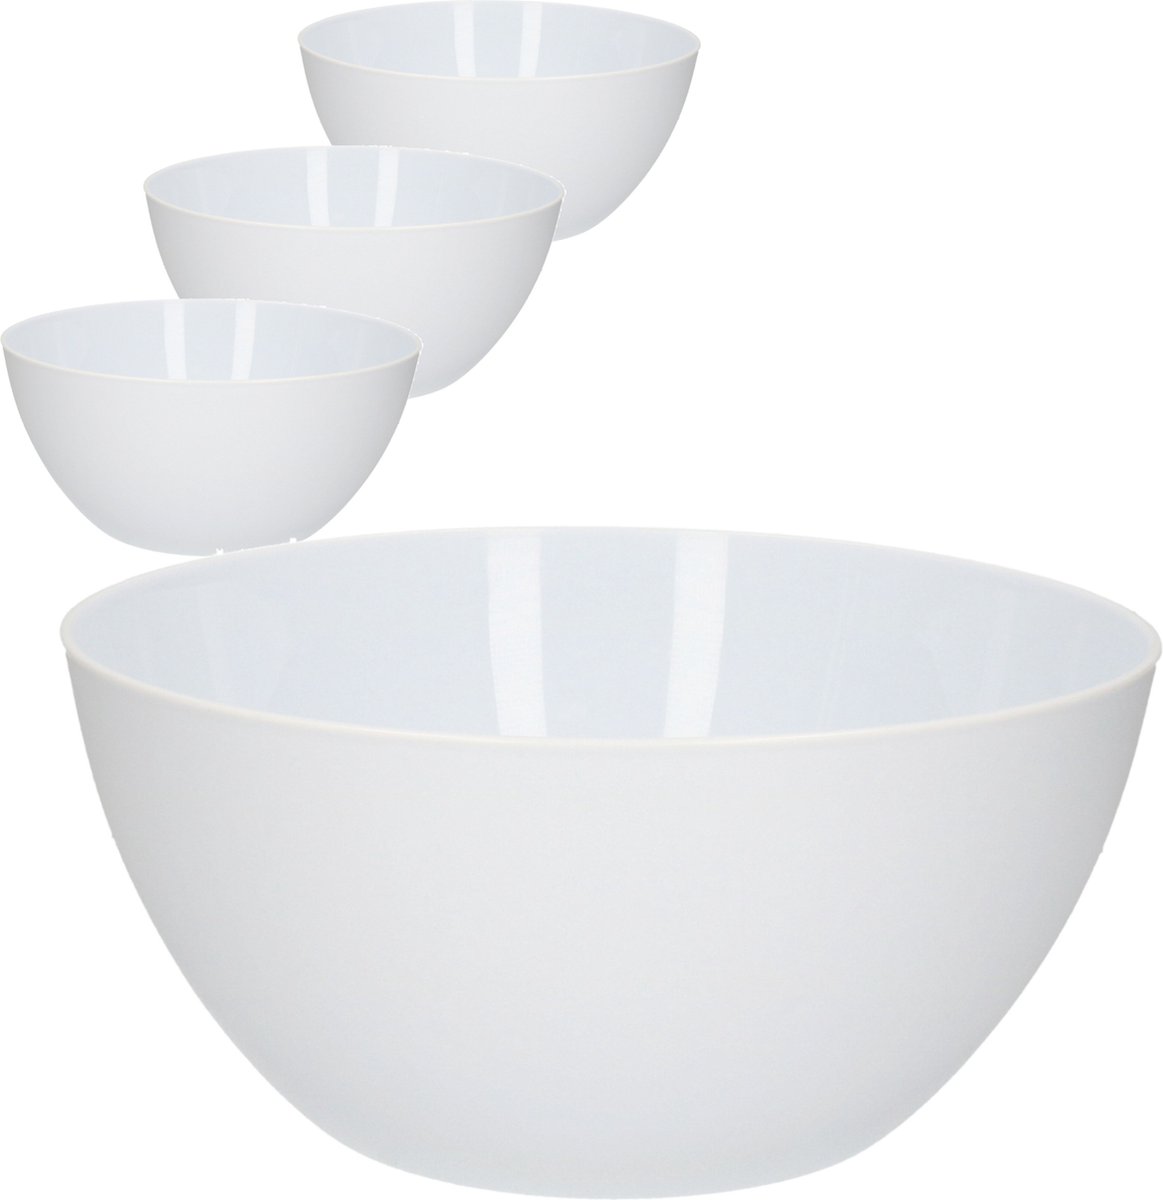 4x Grands plats / bols de service blanc - 25 cm - Service de laitue /  salade - Bols /